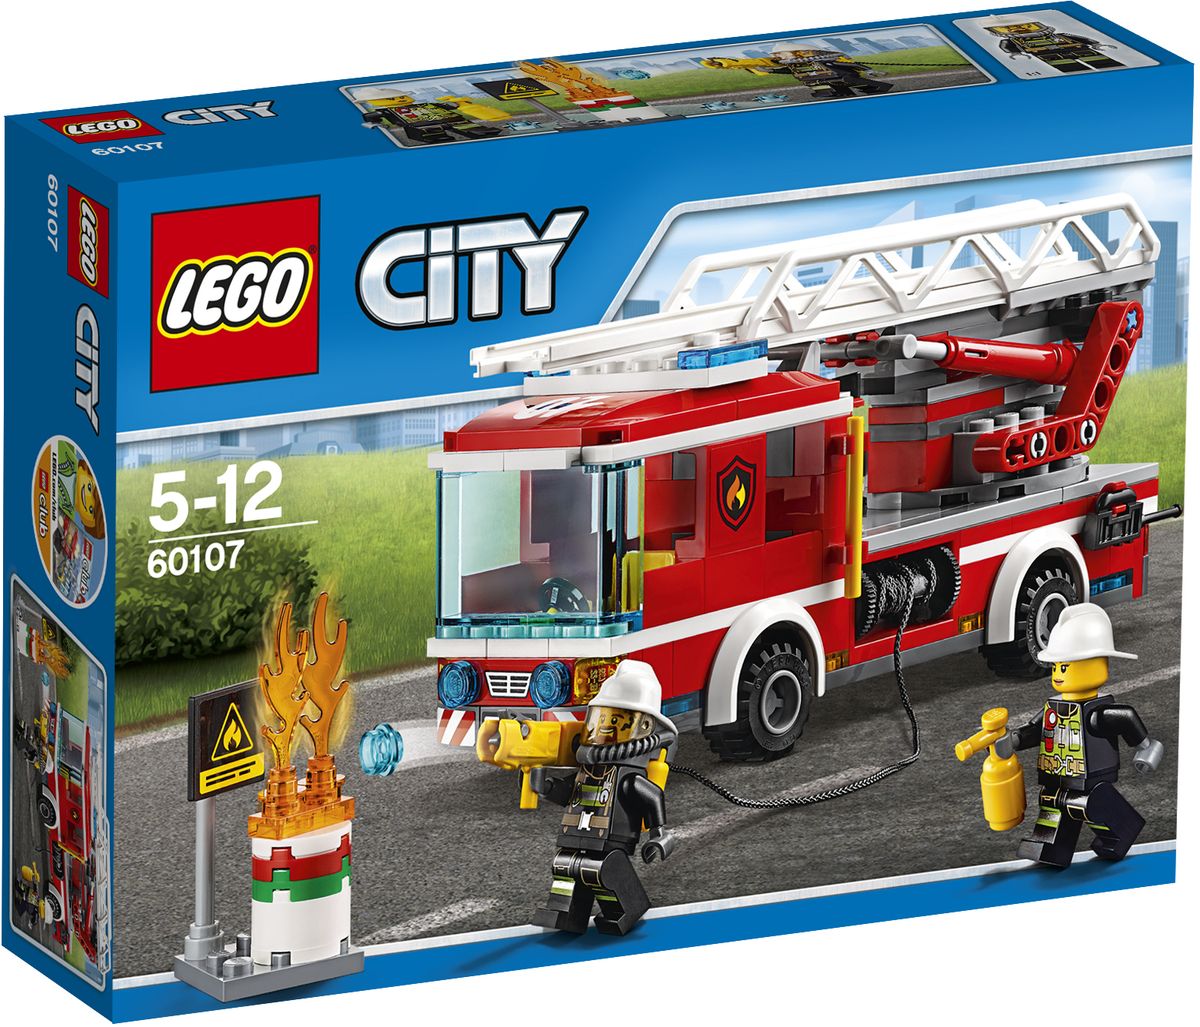 LEGO City Конструктор Пожарный автомобиль с лестницей 60107